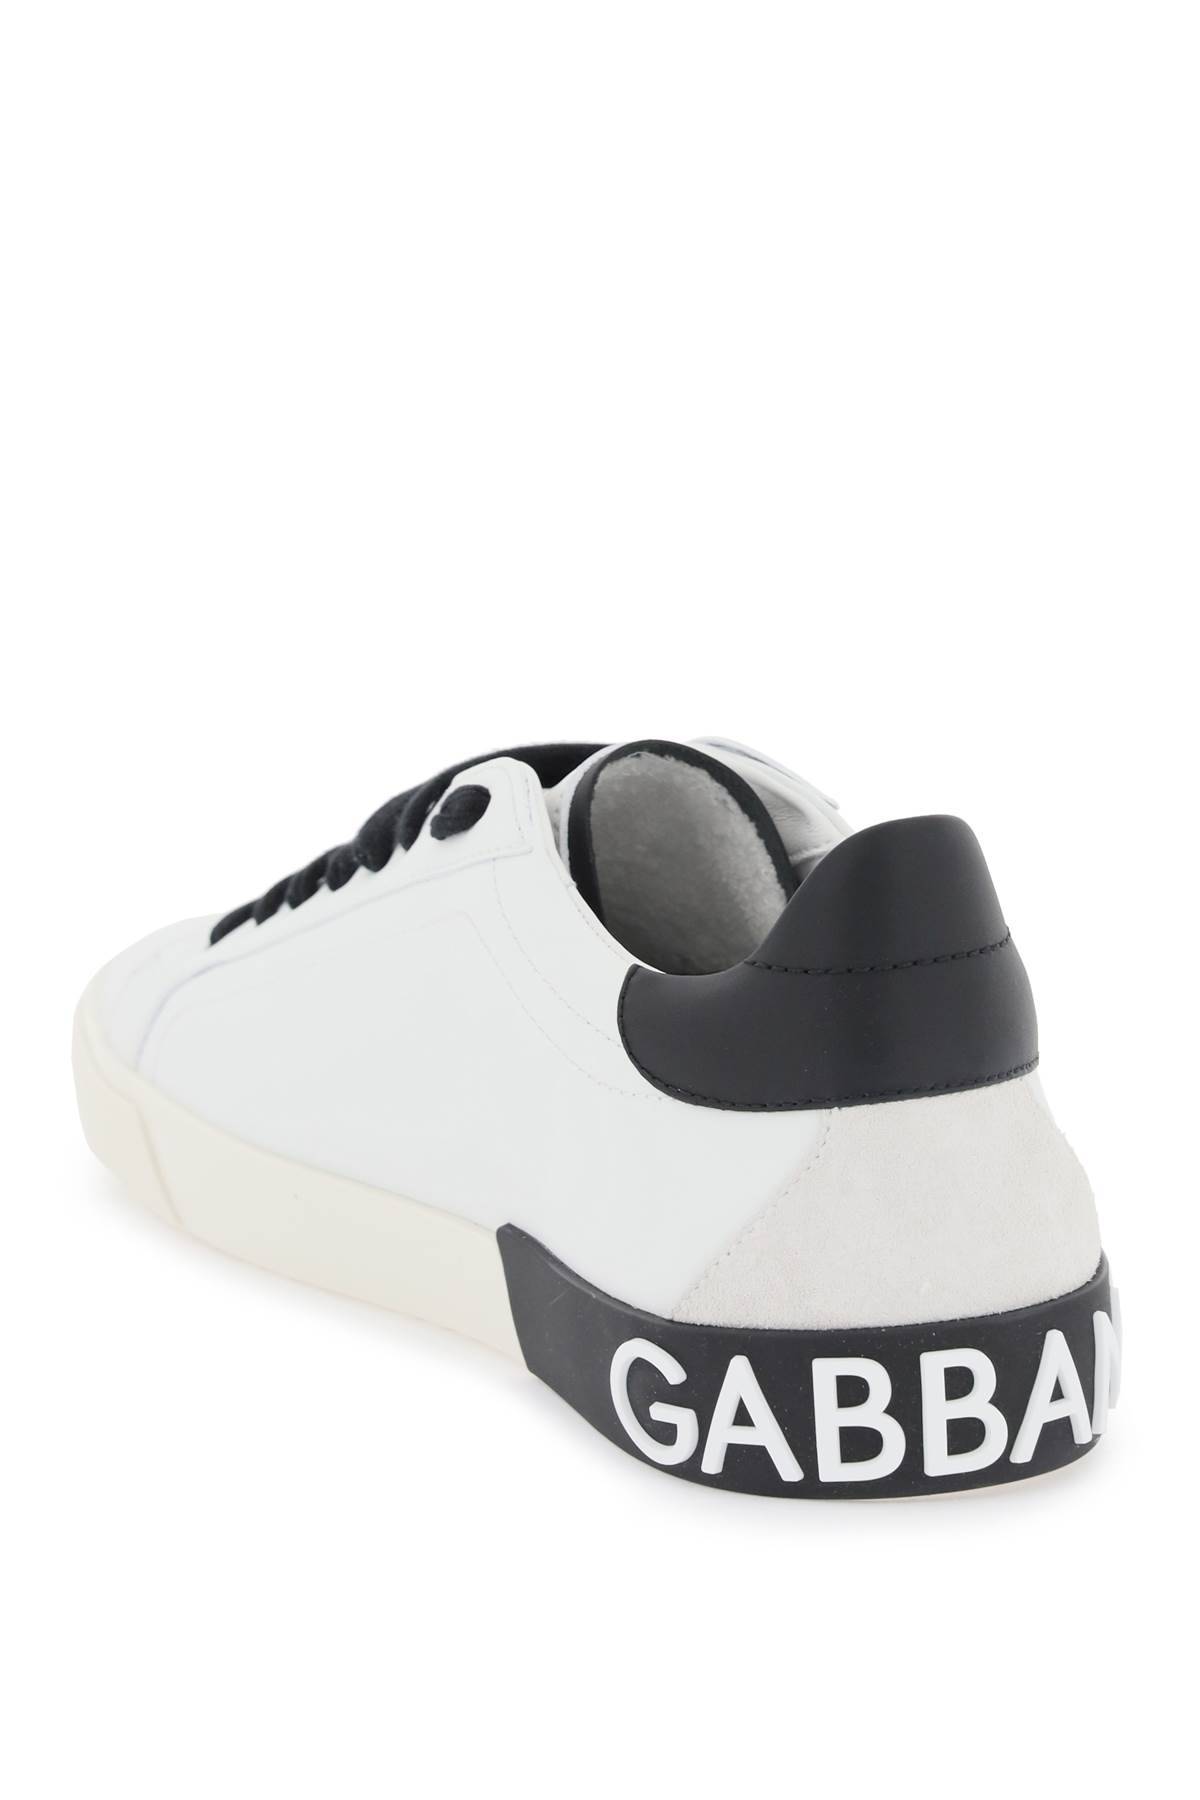 Shop Dolce & Gabbana Nappa Leather Portofino Sneakers In White,black